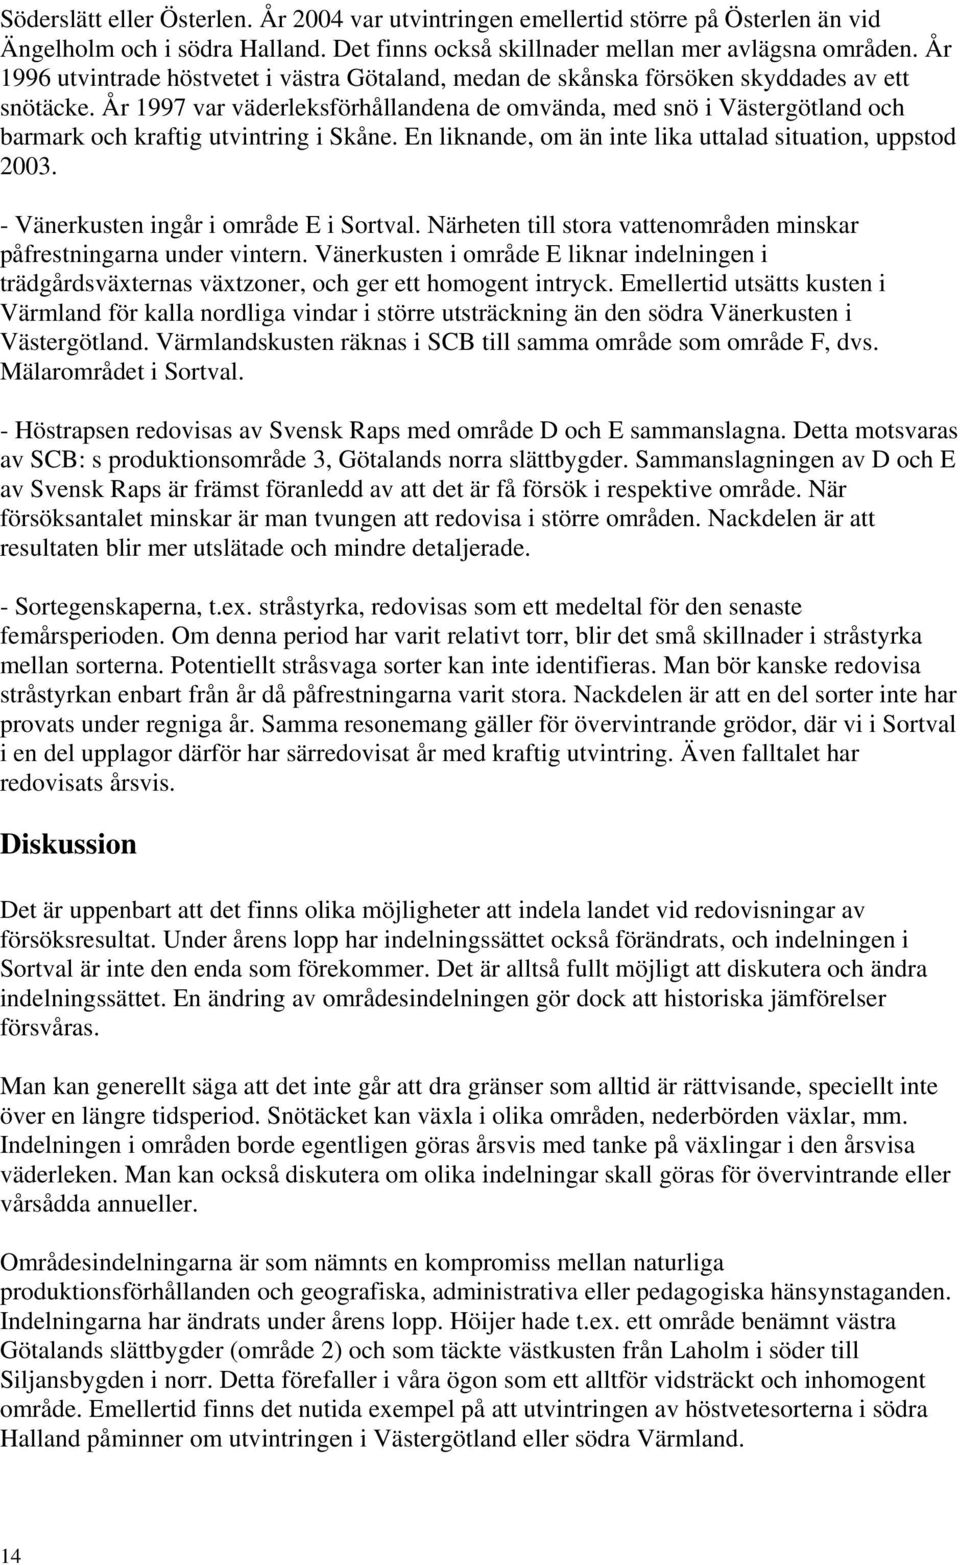 År 1997 var väderleksförhållandena de omvända, med snö i Västergötland och barmark och kraftig utvintring i Skåne. En liknande, om än inte lika uttalad situation, uppstod 2003.